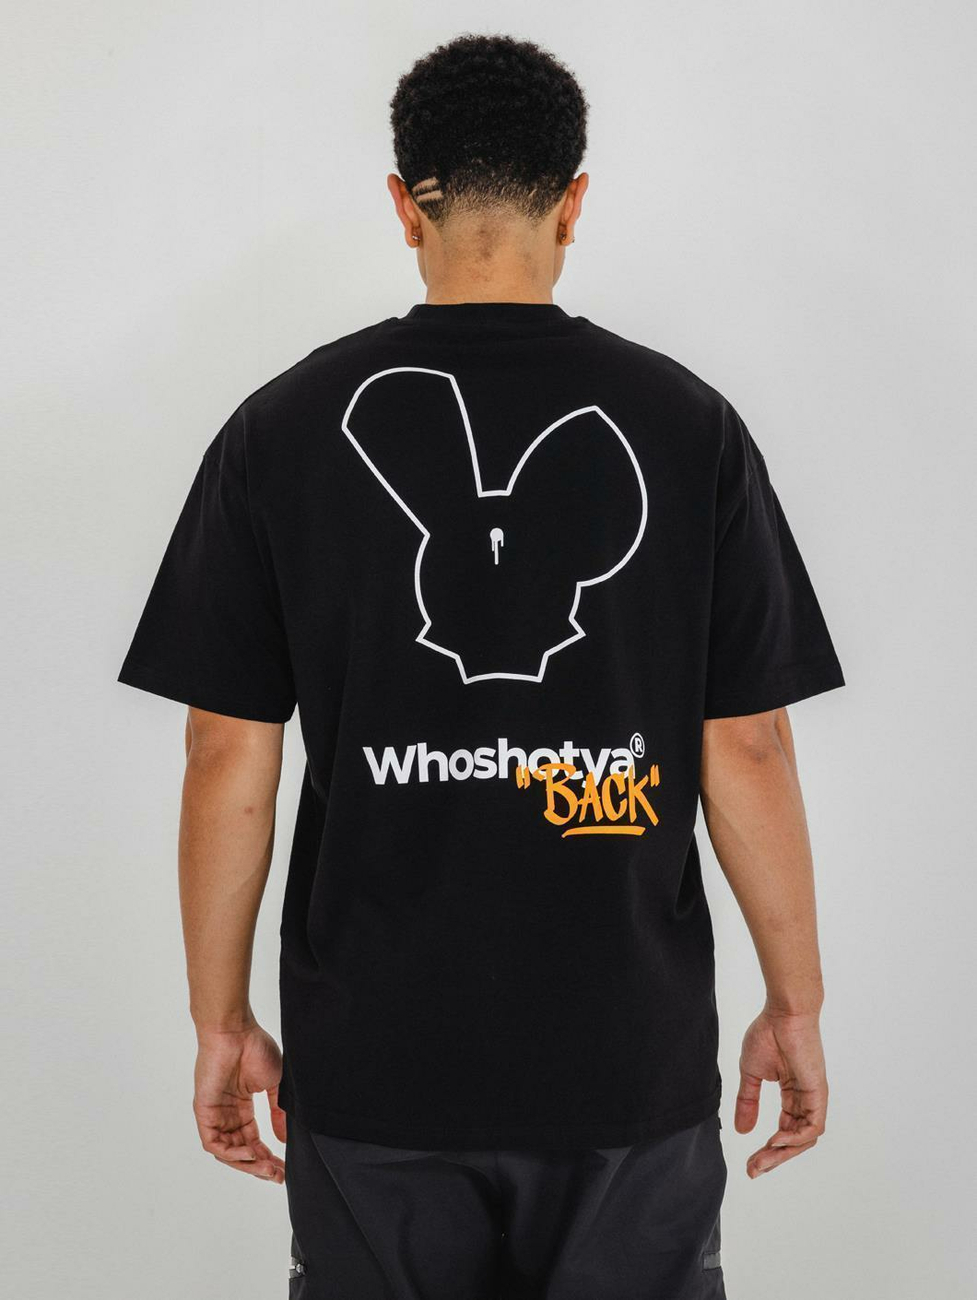 Who Shot Ya Shotyaback T-Shirt 2XL